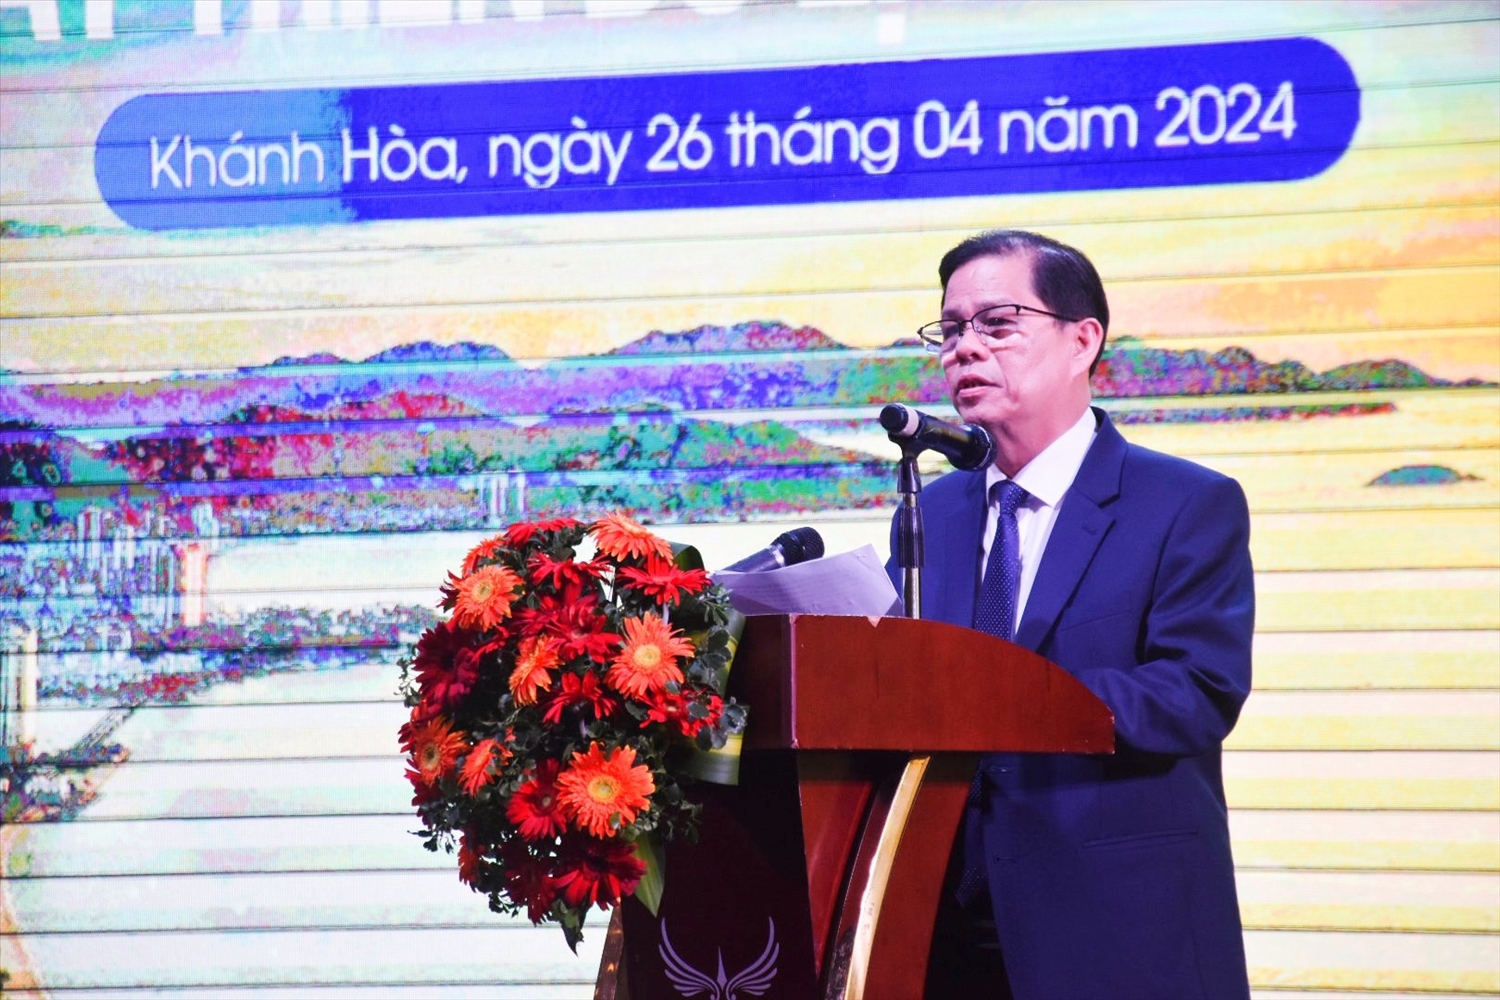  Ông Nguyễn Tấn Tuân, Chủ tịch UBND tỉnh Khánh Hòa phát biểu tại Hội thảo